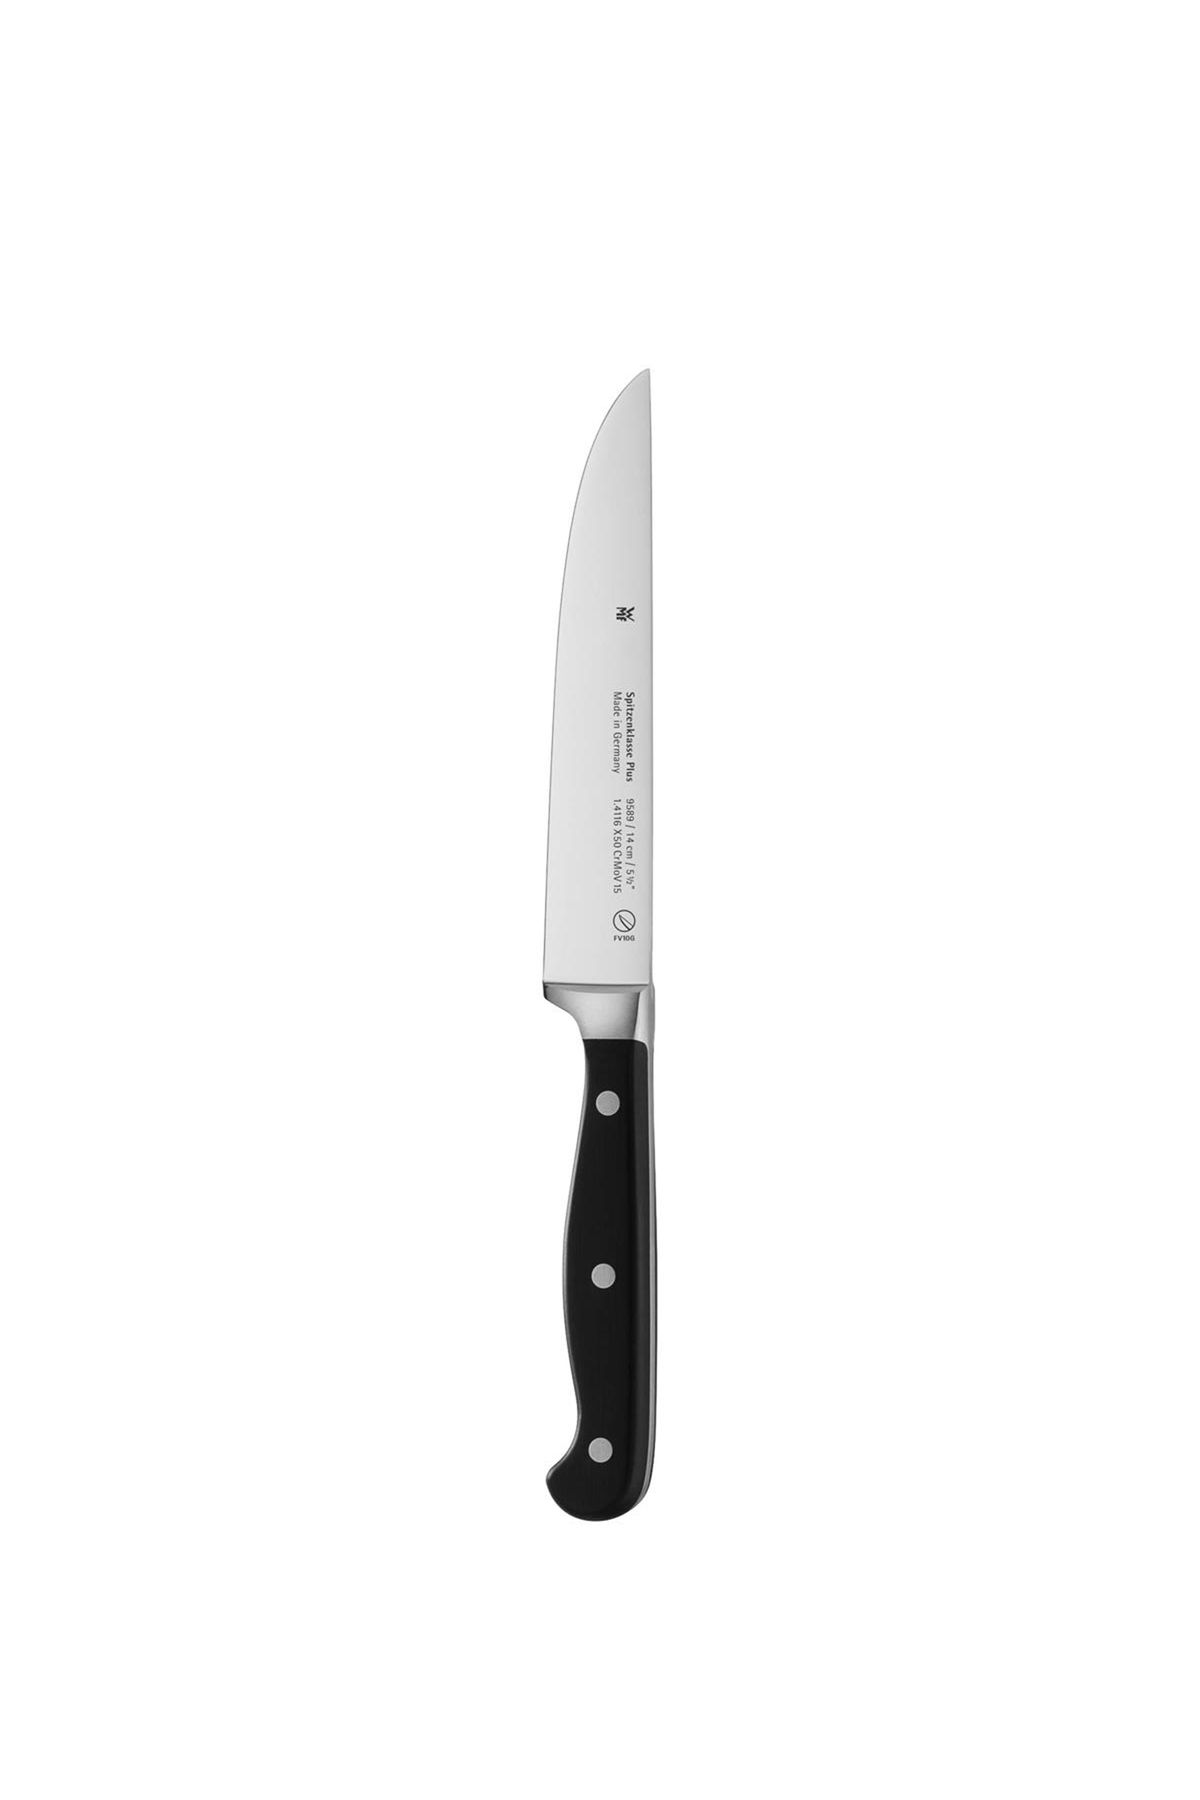 Wmf Spitzenklasse Çok Amaçlı Paslanmaz Çelik Bıçak 14 cm Beden: 14